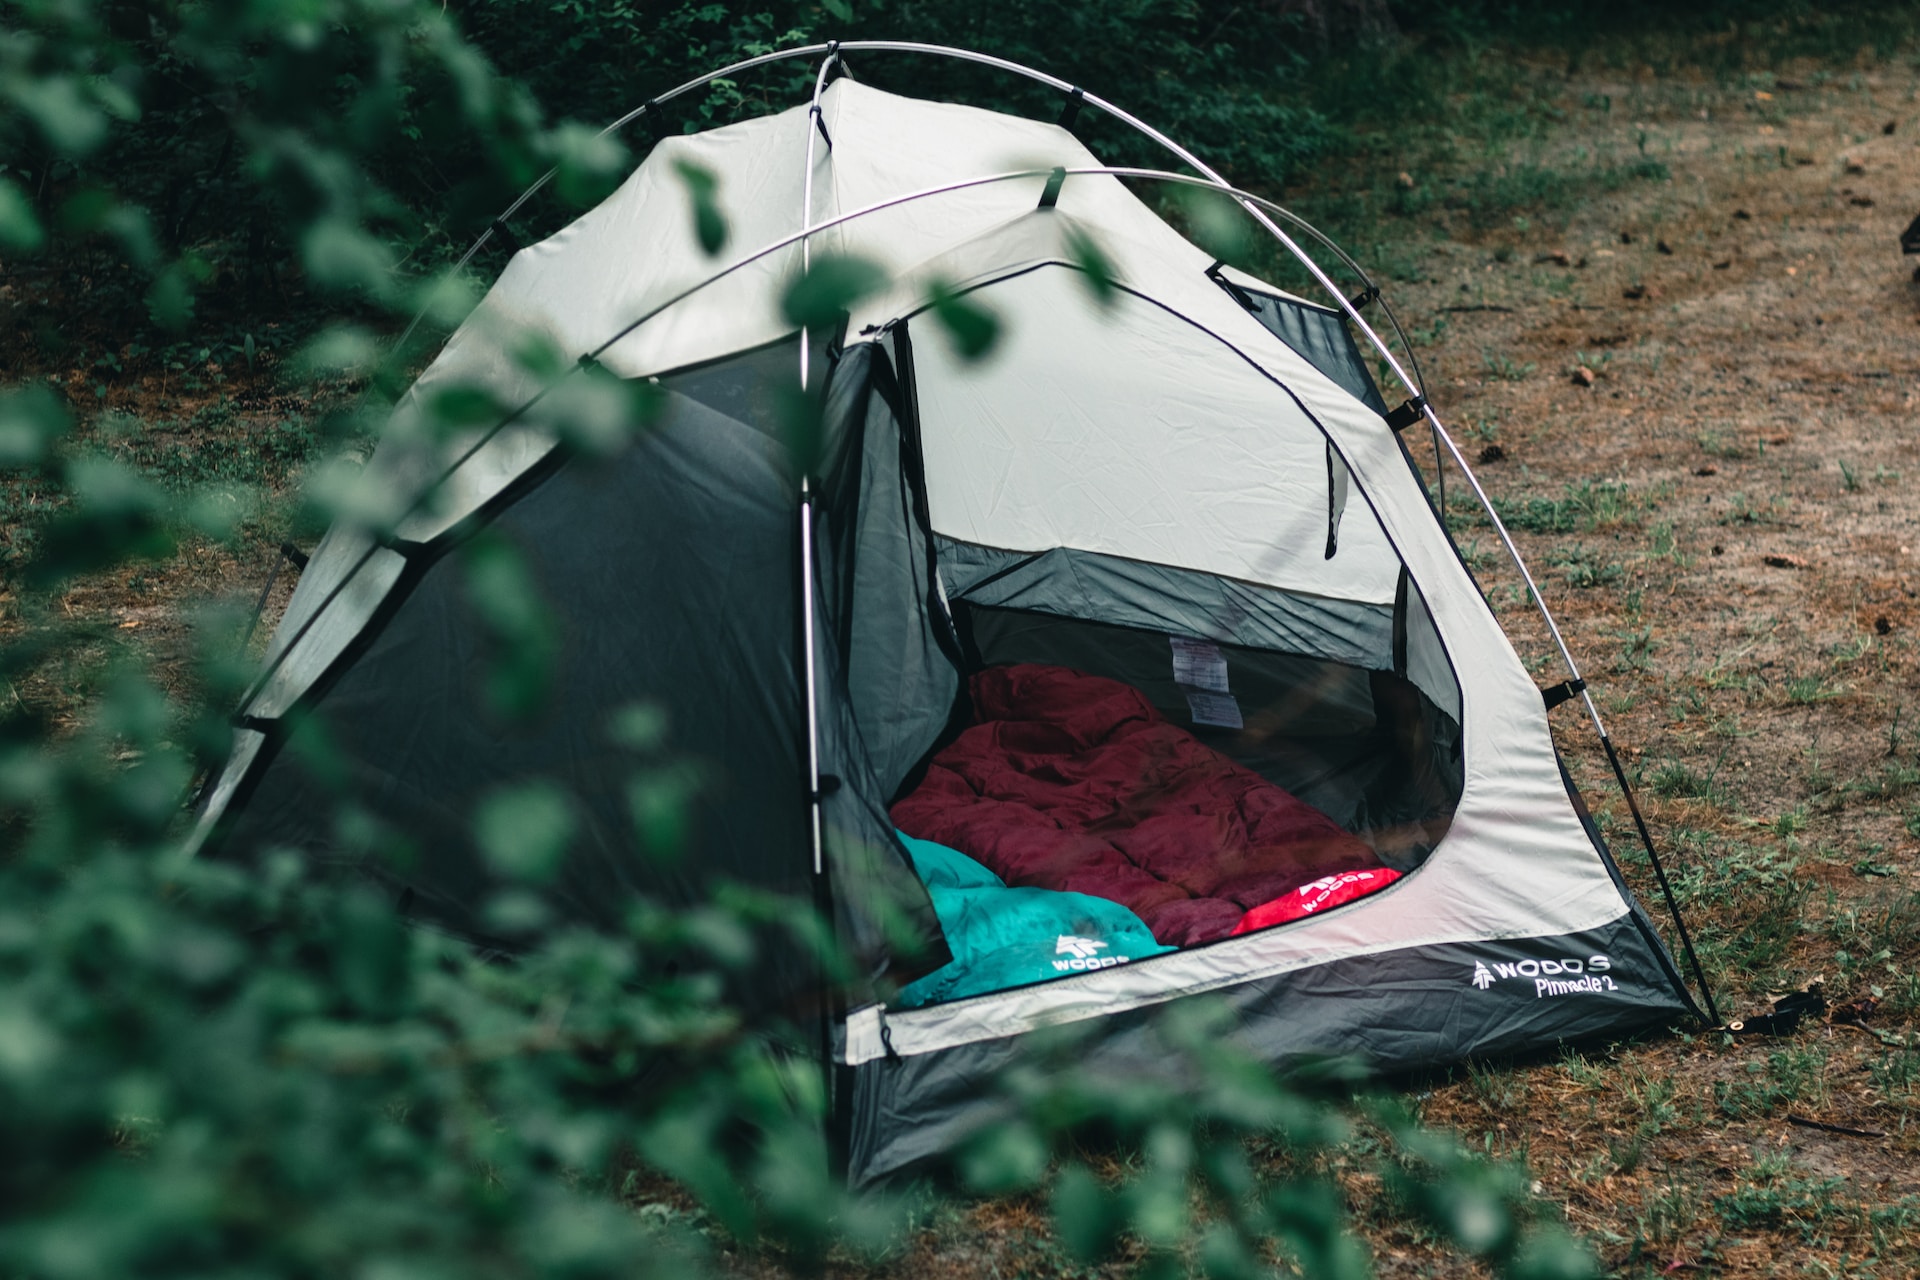 Comment trouver une location de camping à Espelette qui correspond à vos besoins ?